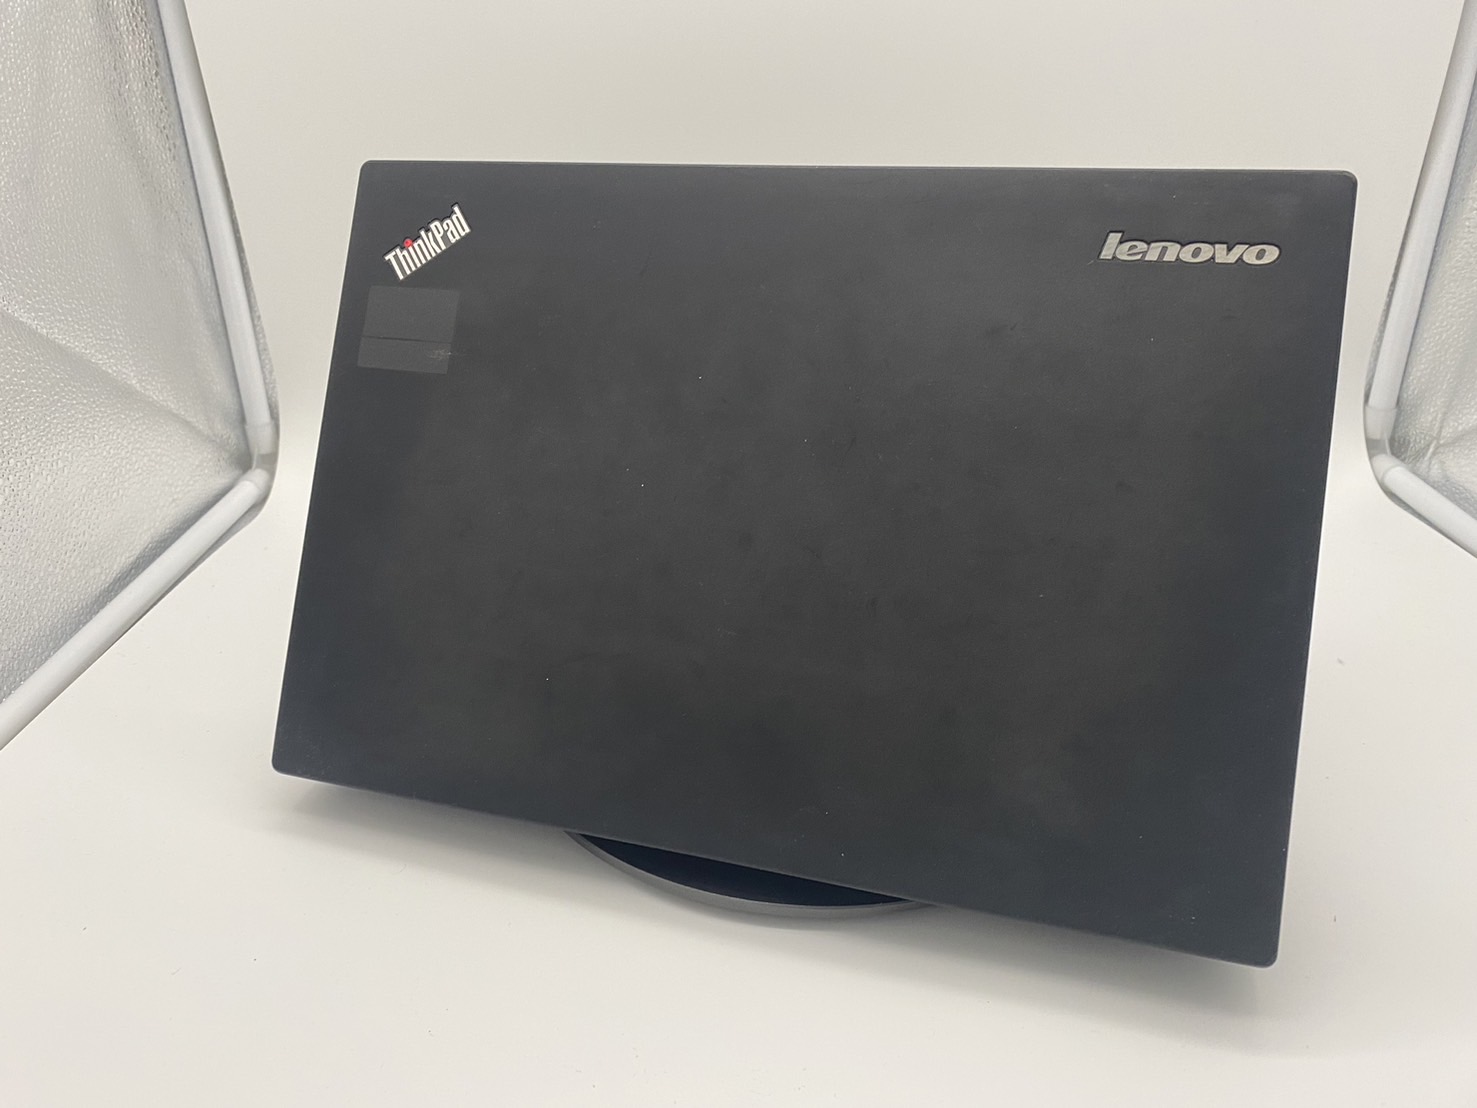 LENOVO(レノボ) ThinkPad X250 20CM006NJPの激安通販(詳細情報) - パソコンショップパウ